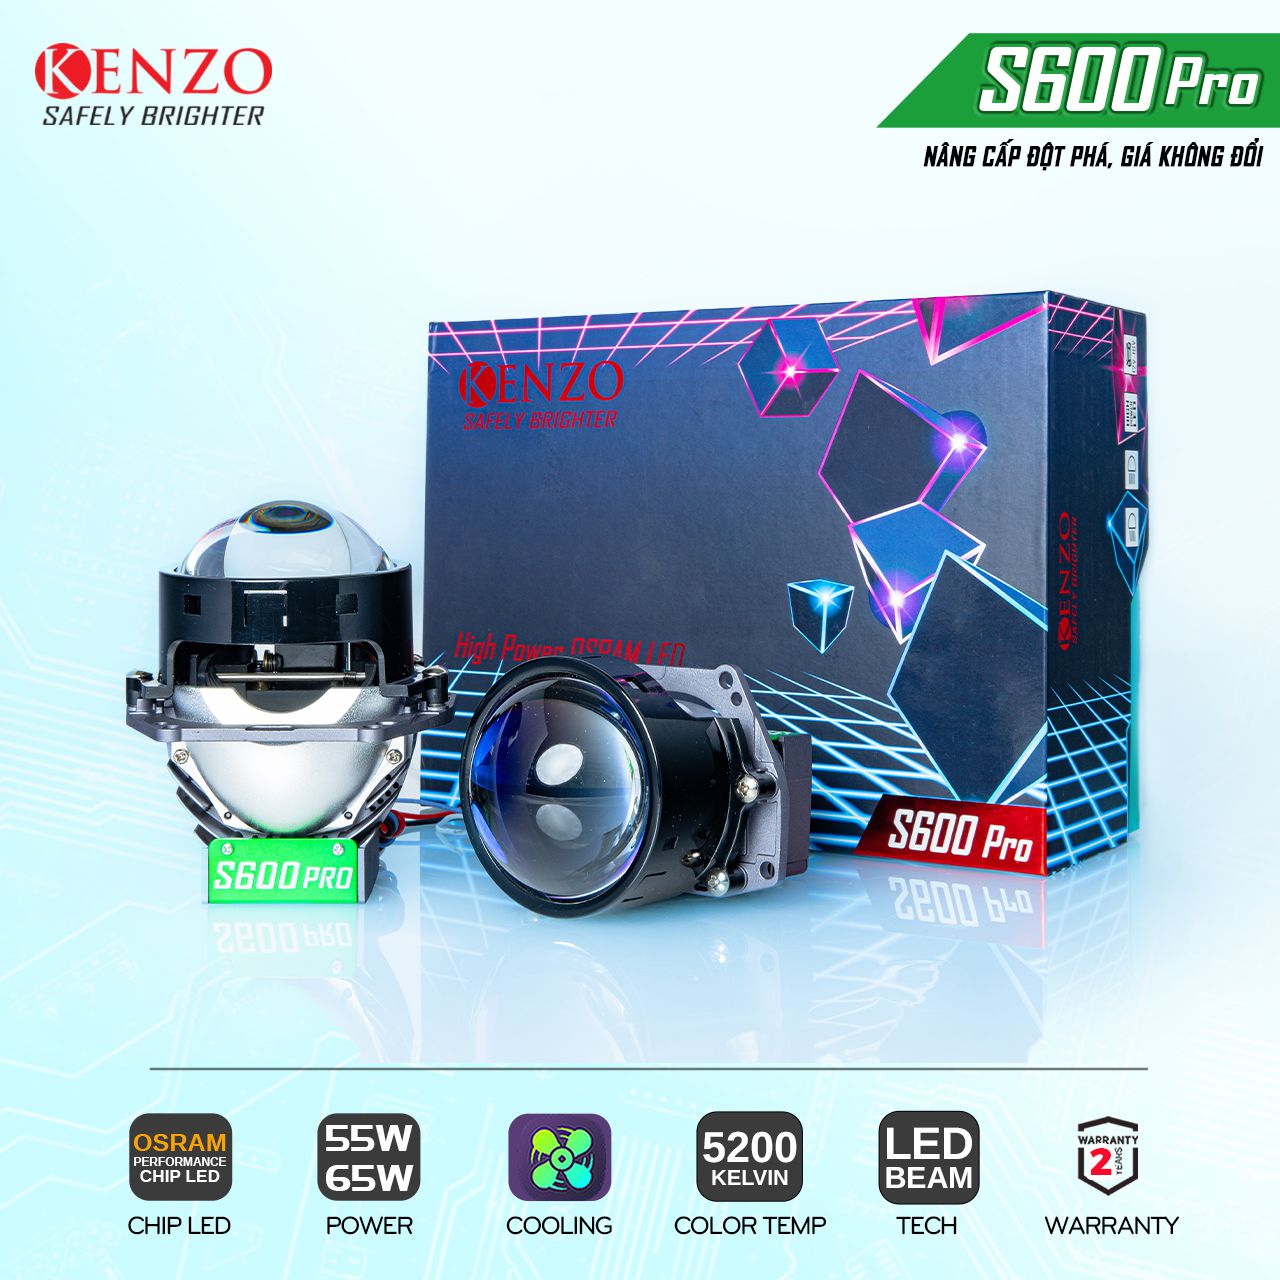 Kenzo S600 Pro